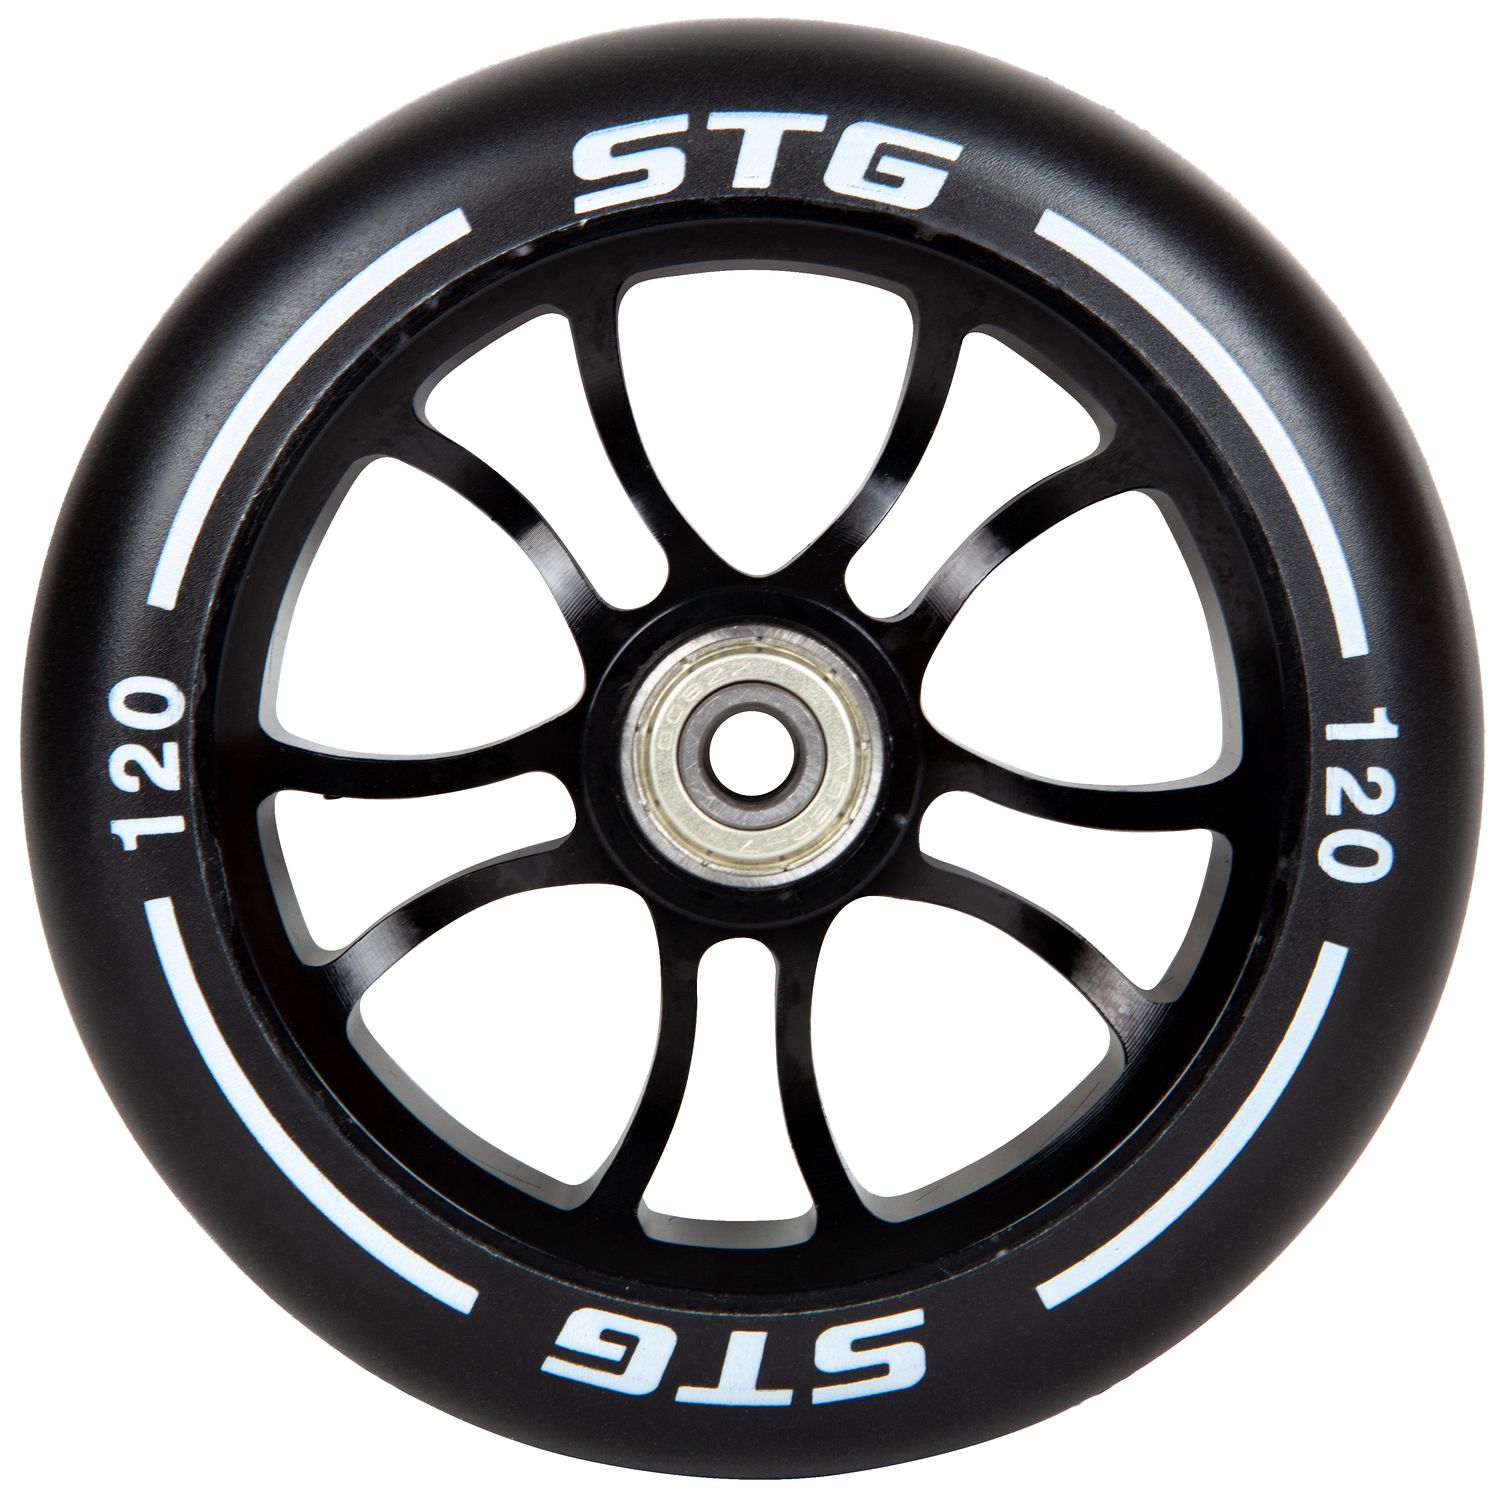 Stinger Колесо STG PU 120mm, для трюковых самокатов, с алюминиевым ободом (X105170), цвет Черный